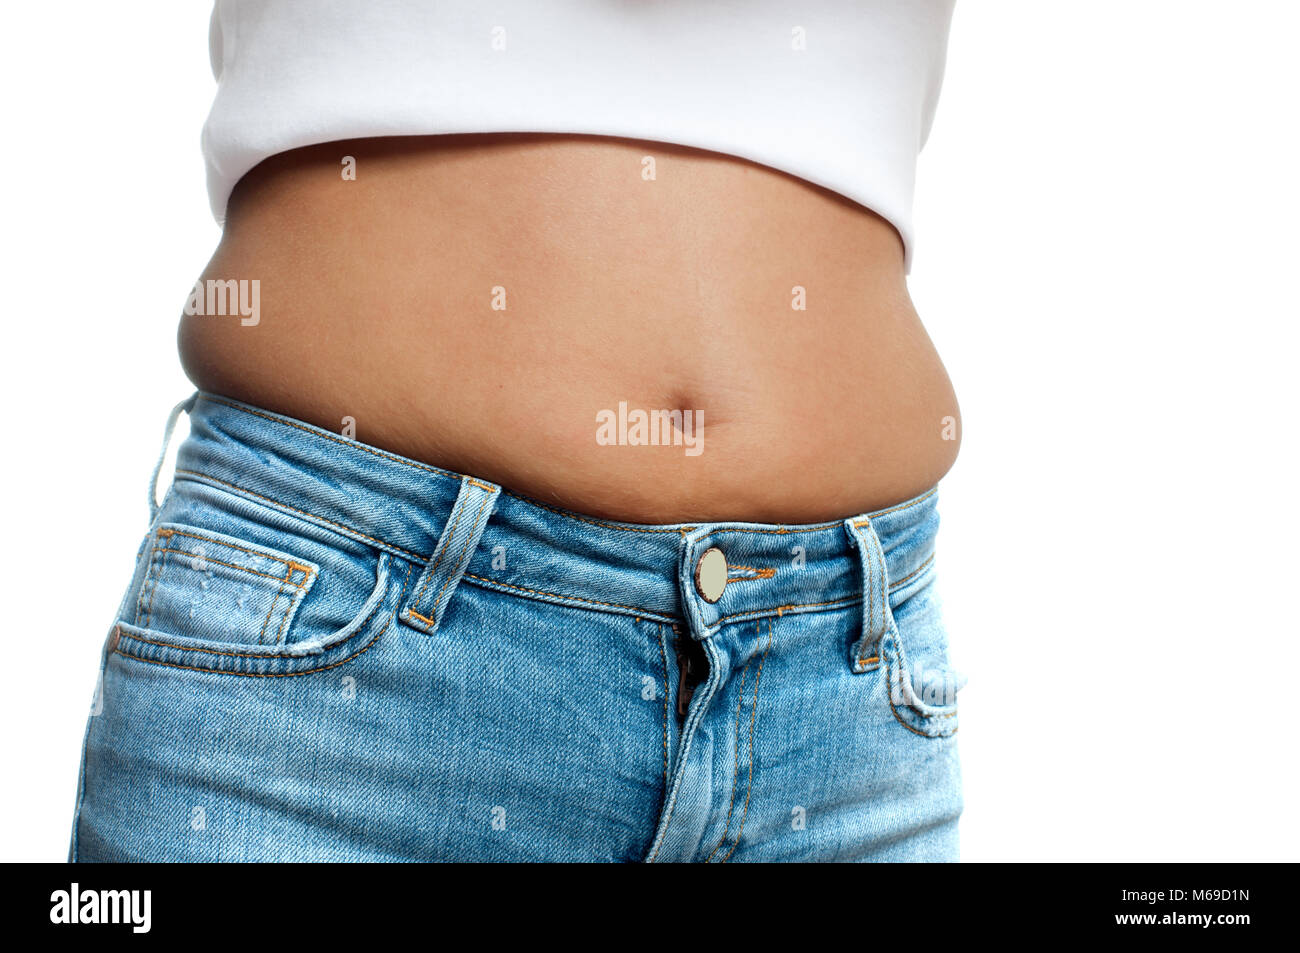 Übergewichtige Frau in Jeans und Fett auf den Hüften und Bauch  Stockfotografie - Alamy